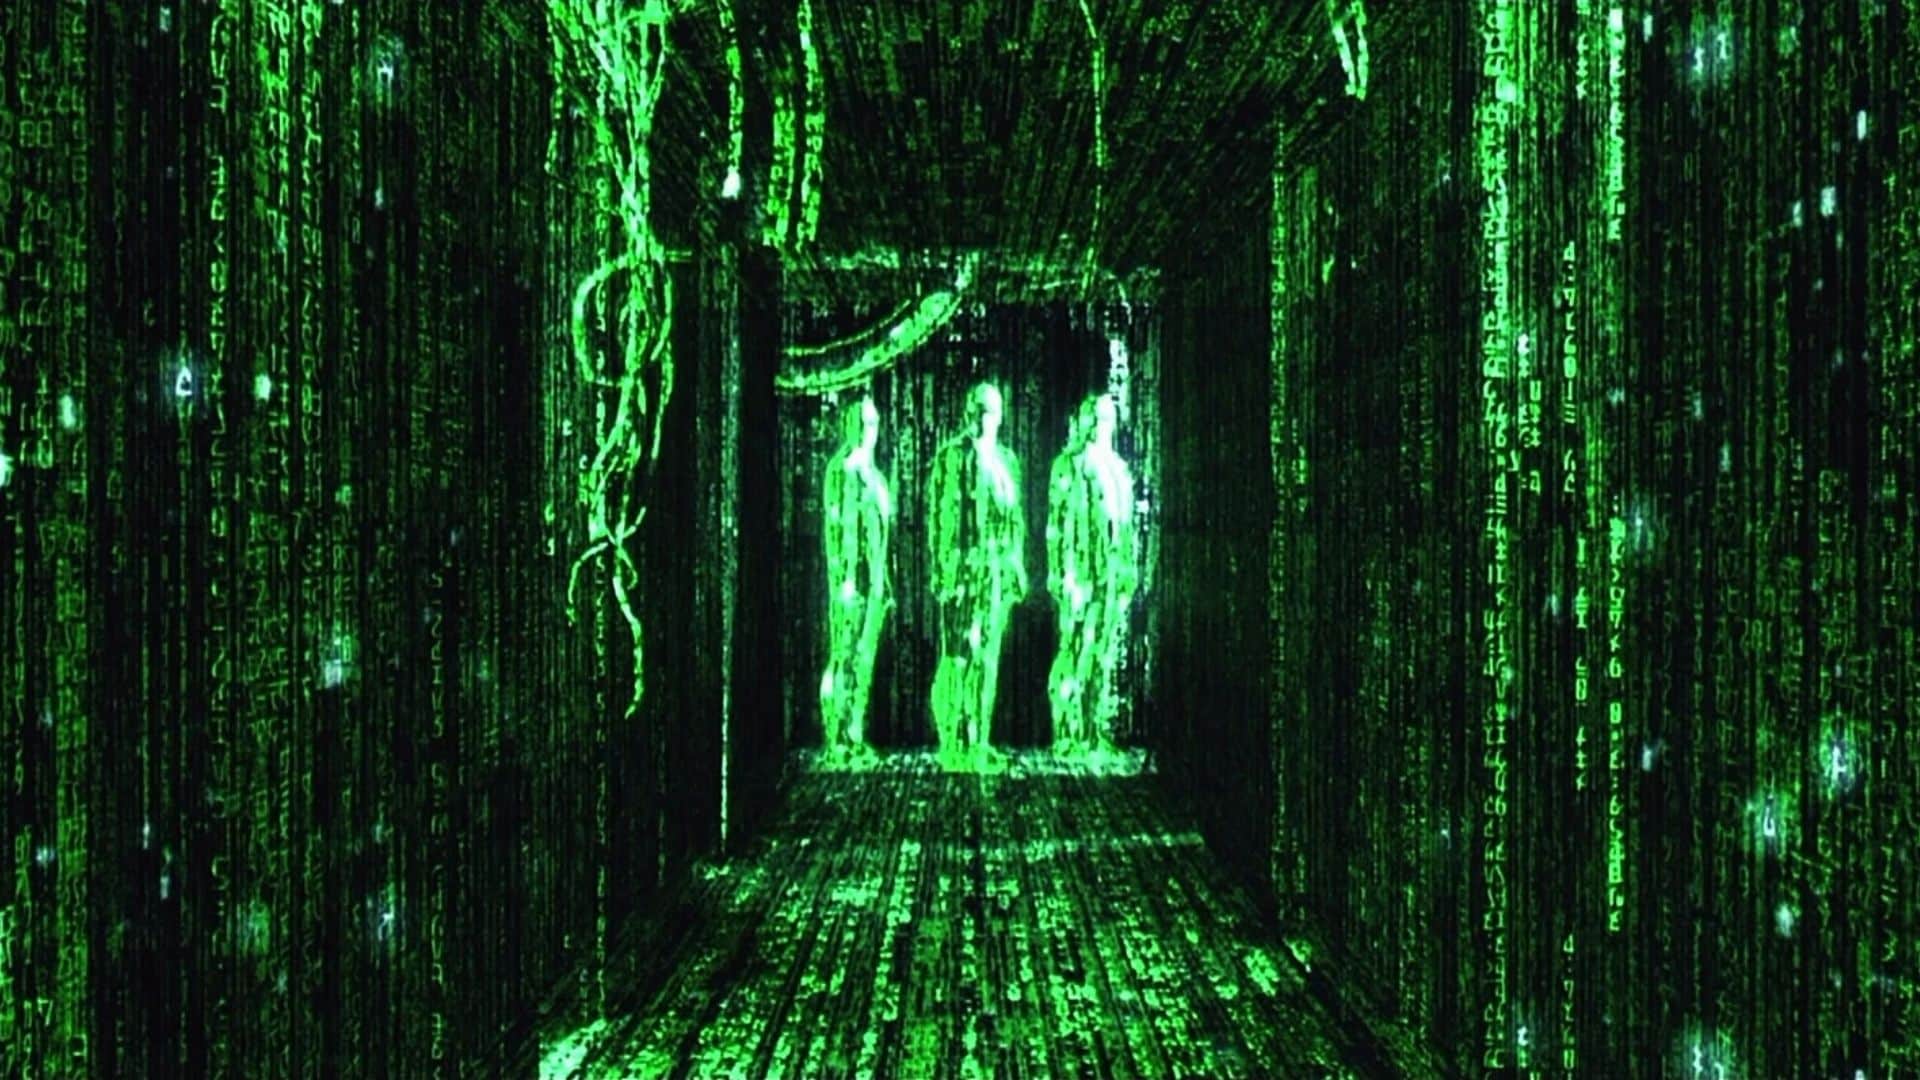 neo seeing the matrix code